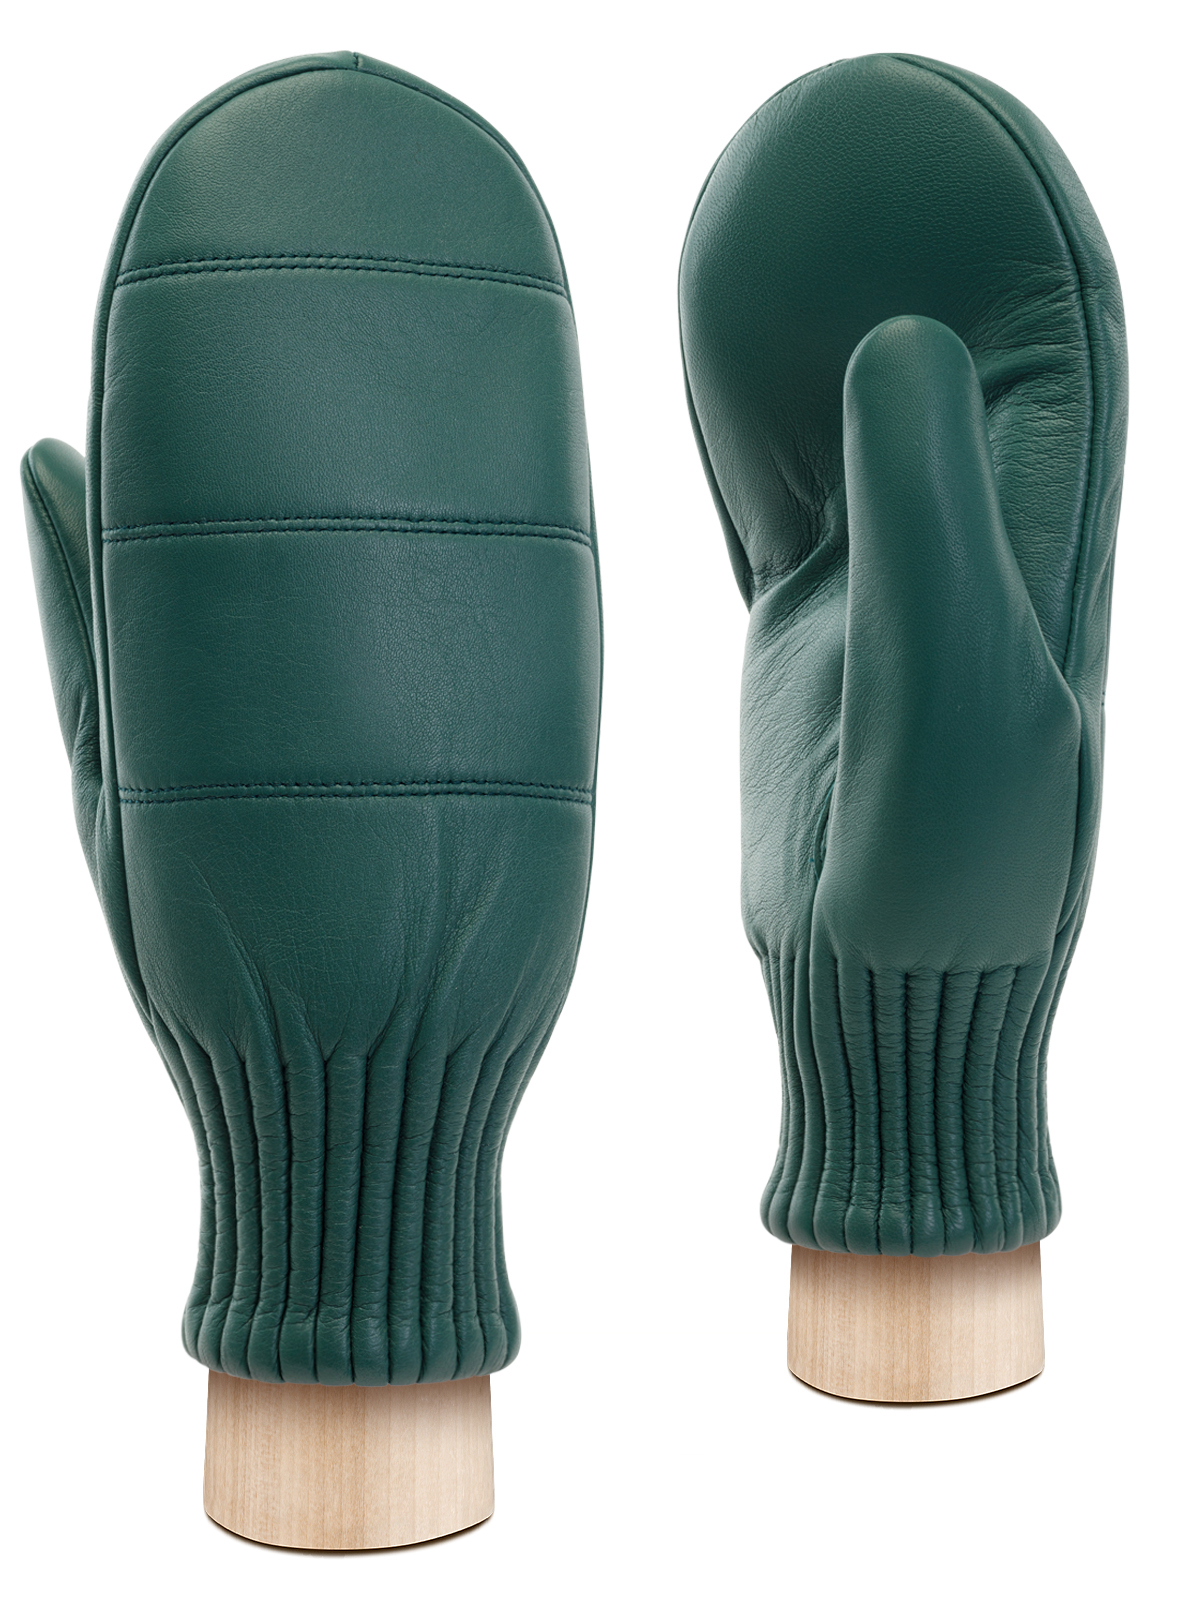 Перчатки женские Eleganzza IS8530 серо-зеленые р. 6,5